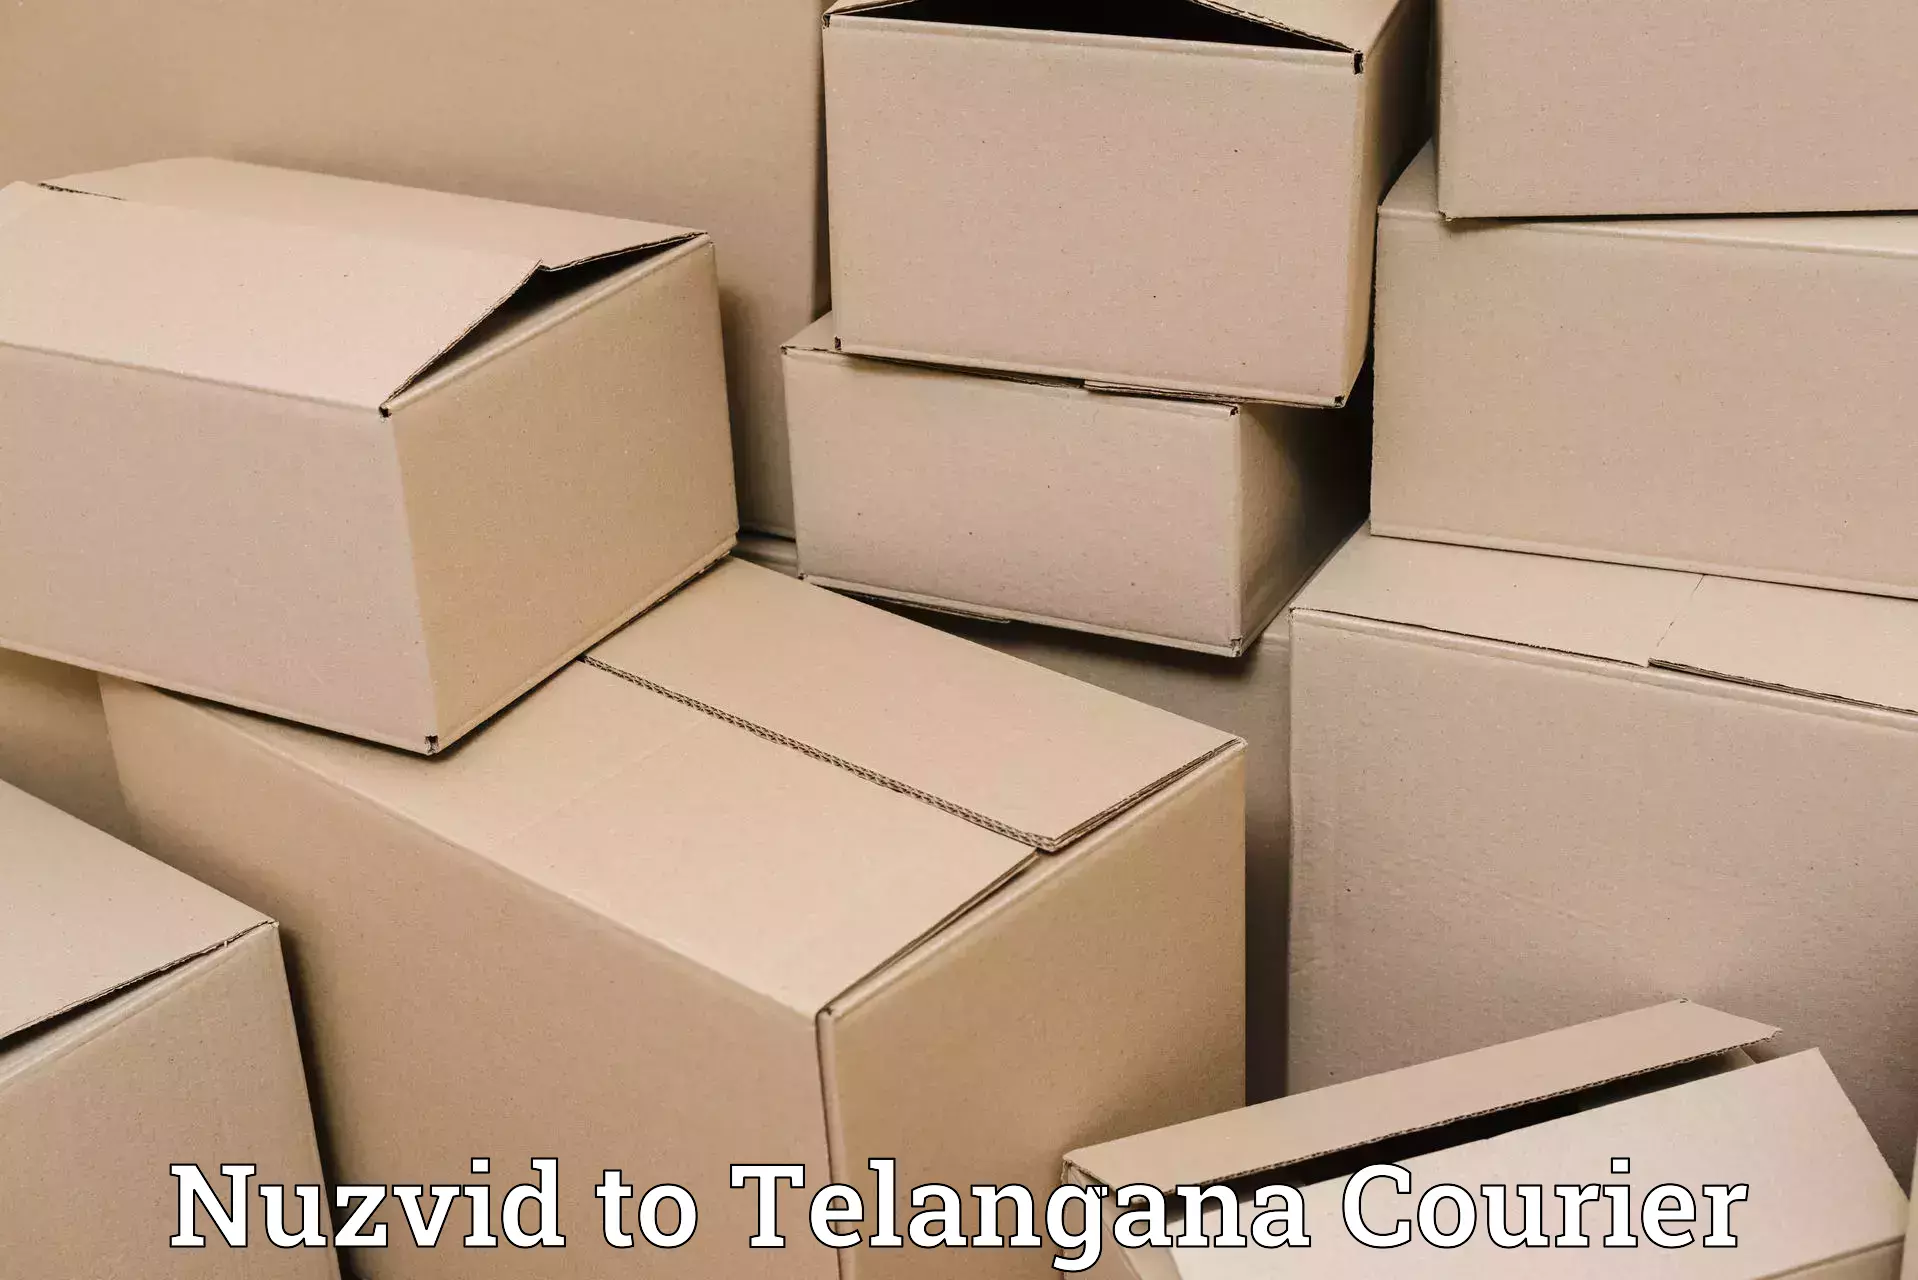 Shipping and handling Nuzvid to Telangana